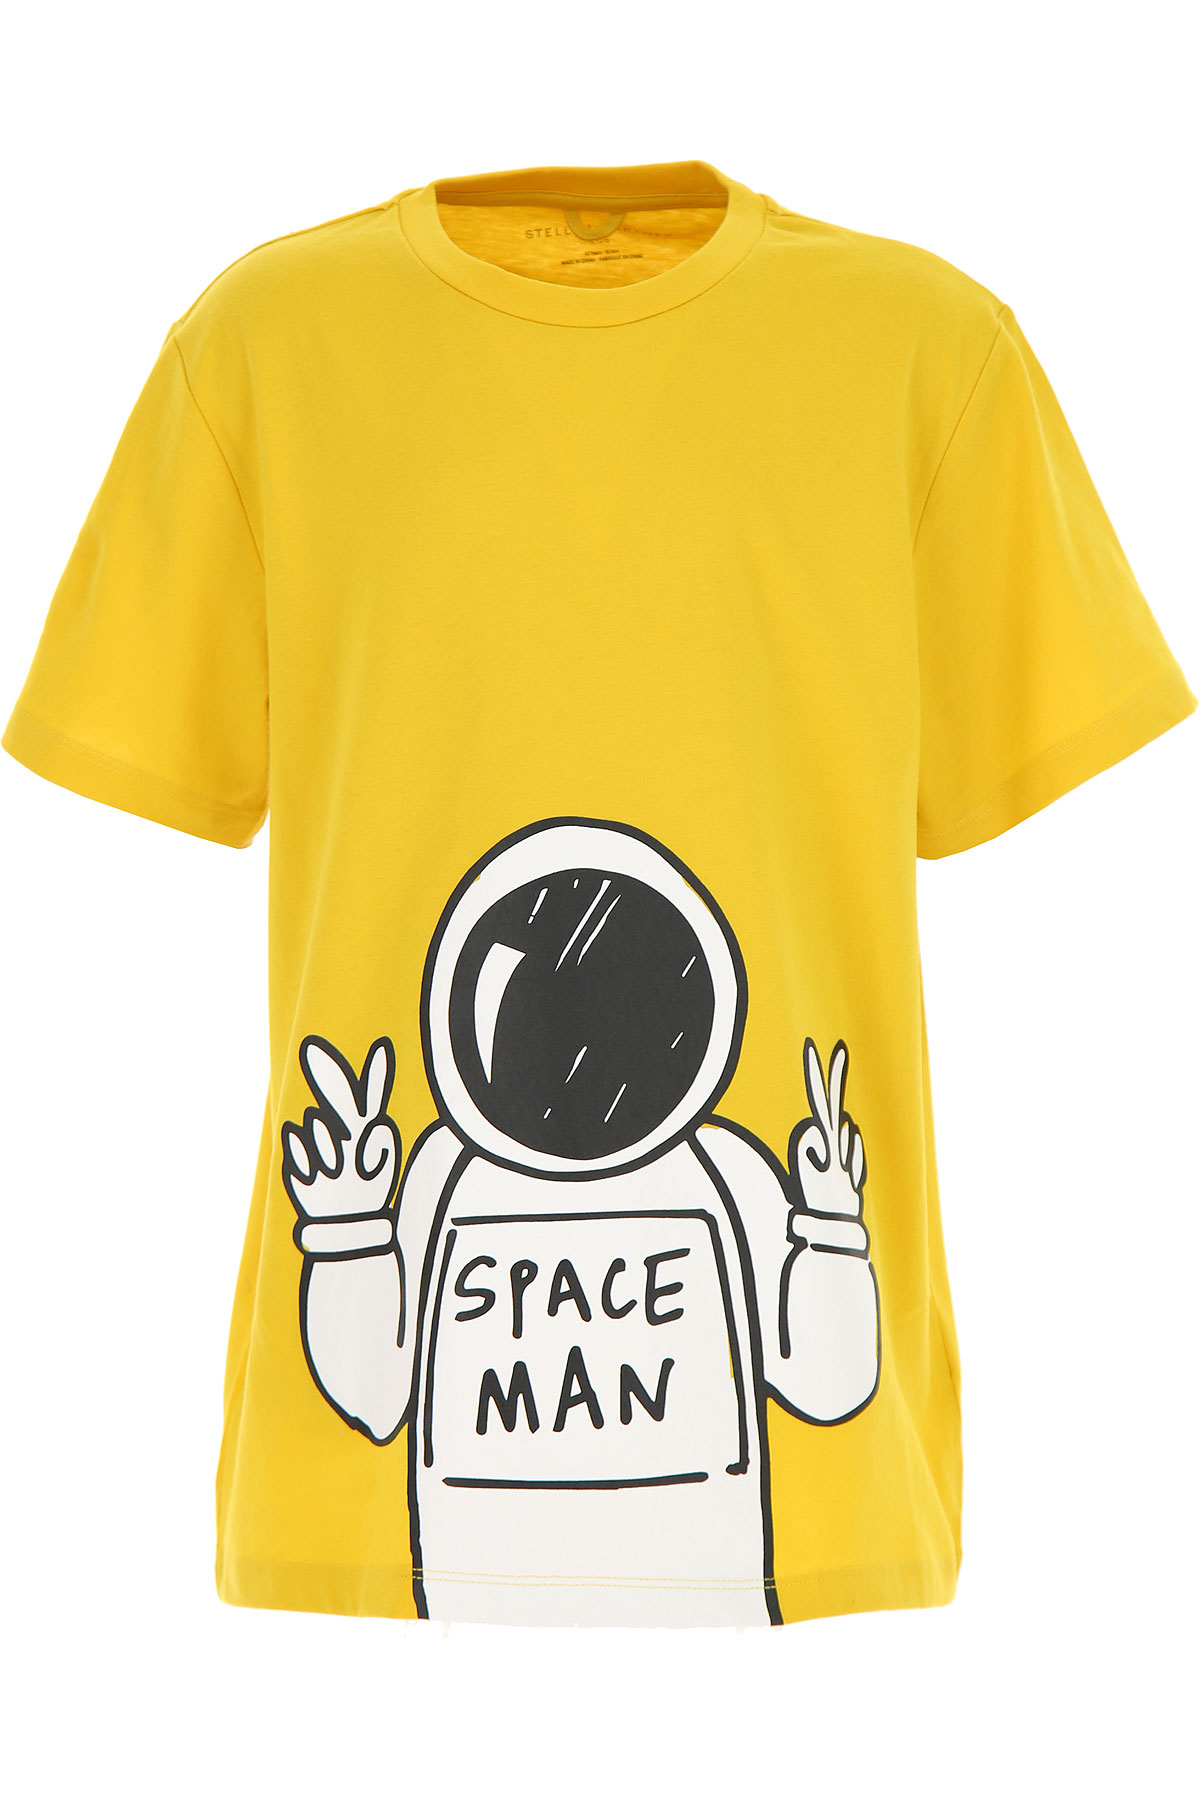 Stella McCartney Kinder T-Shirt für Jungen Günstig im Sale, Gelb, Baumwolle, 2017, 10Y 12Y 14Y 8Y